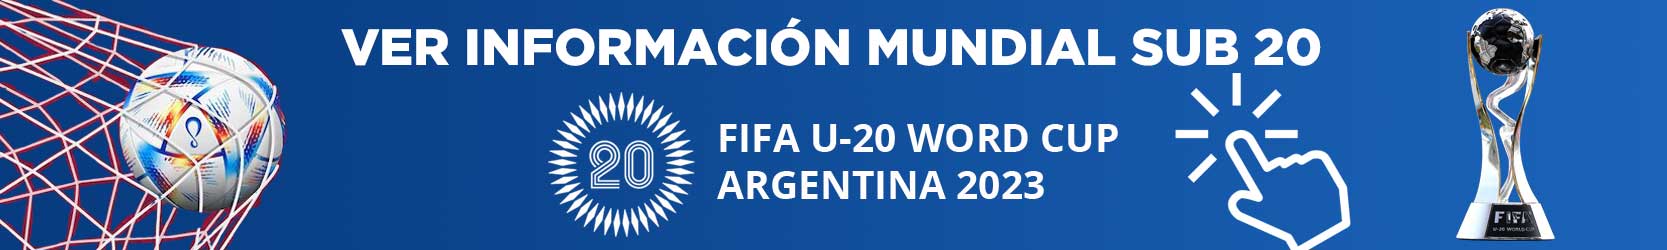 Banner-Mundial-Sub-20-Argentina-2023